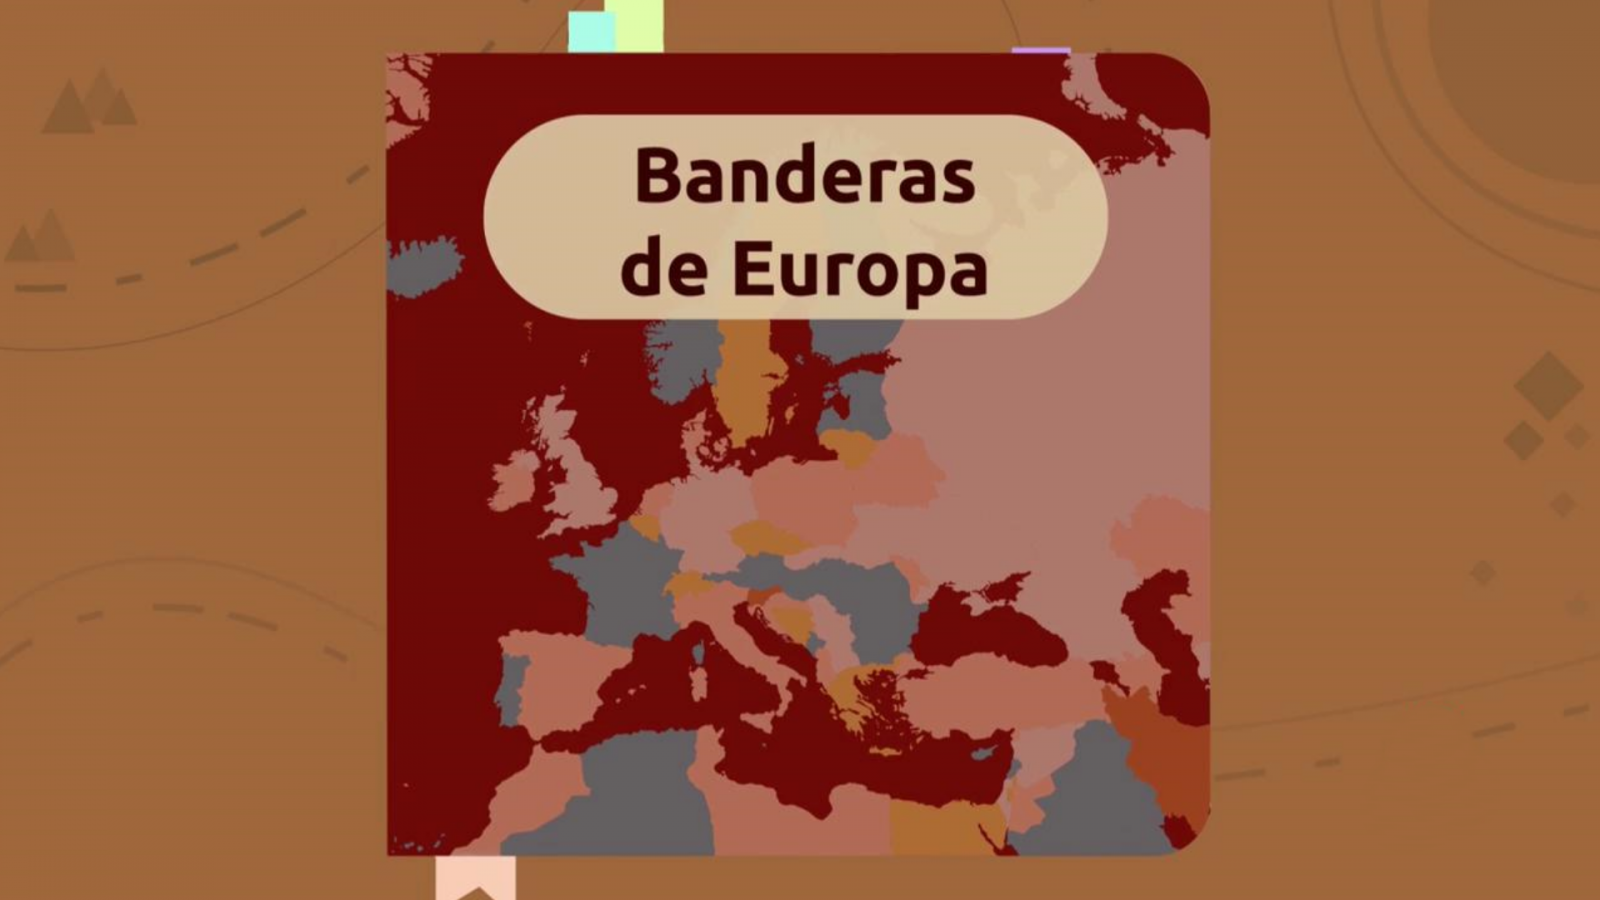 Aprendemos en casa - De 12 a 14 años - Ciencias sociales: Banderas de Europa I - RTVE.es